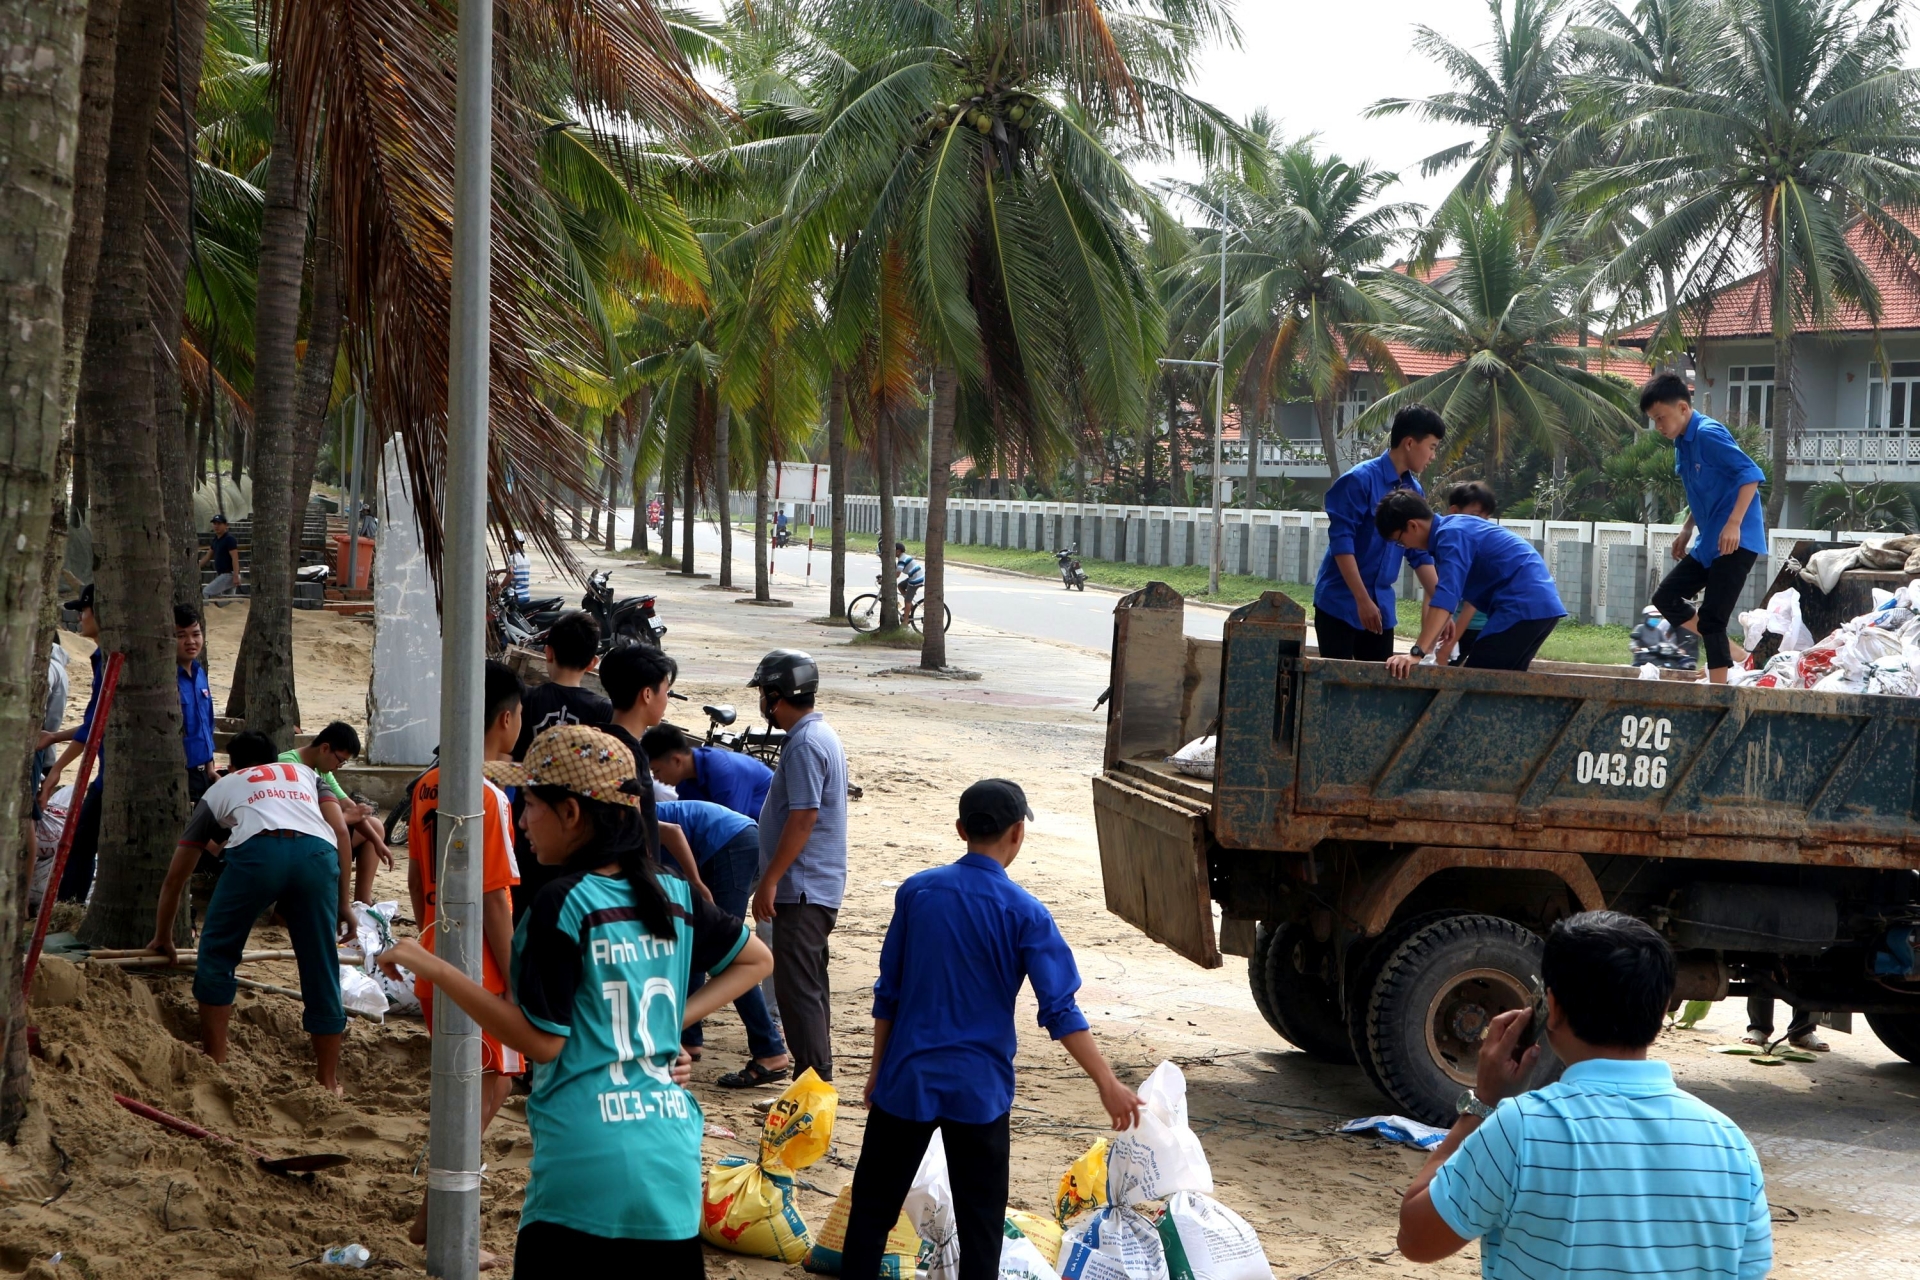 Tam Kỳ (Quảng Nam) sơ tán khẩn cấp 9.700 dân đến nơi an toàn trước 17 giờ chiều nay